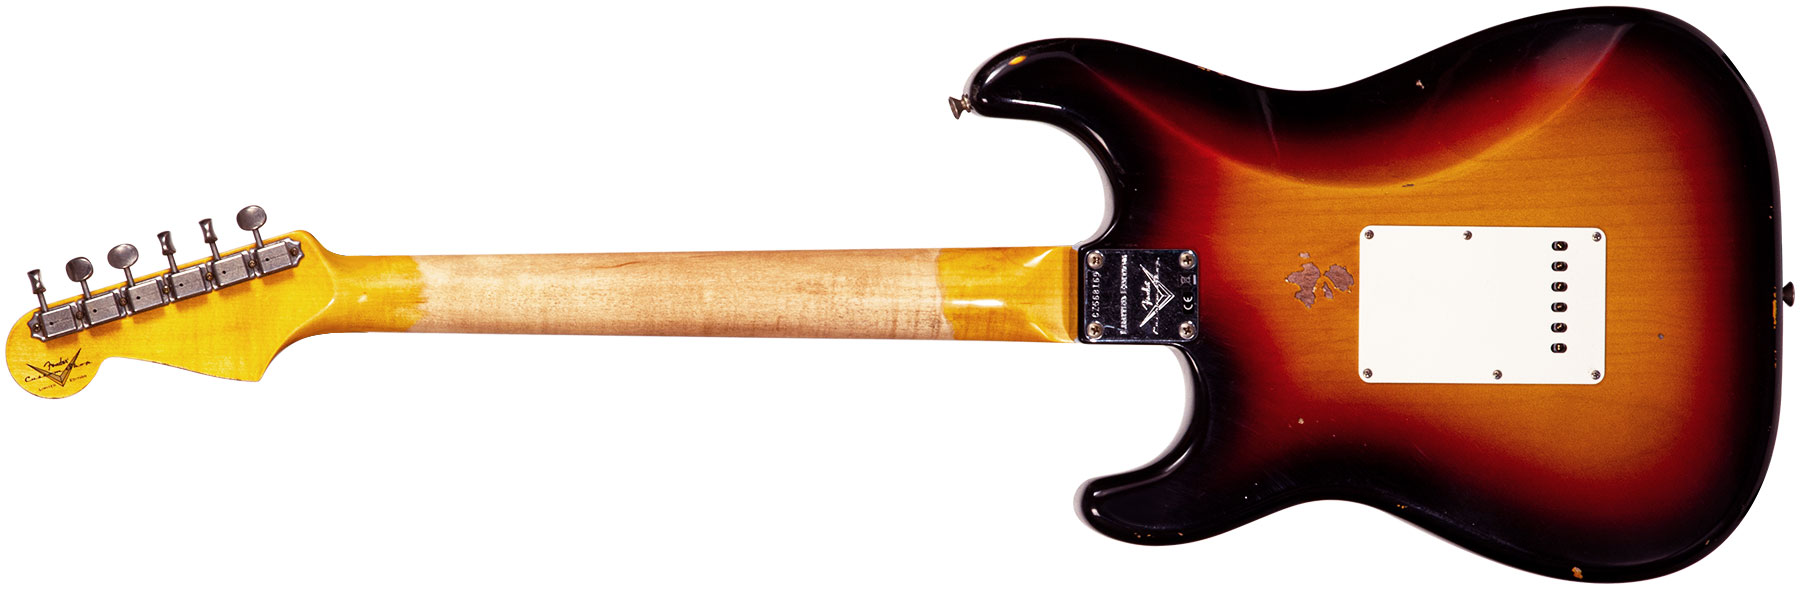 Fender Custom Shop Strat Late 64 3s Trem Rw #cz568169 - Relic Target 3-color Sunburst - E-Gitarre in Str-Form - Variation 1